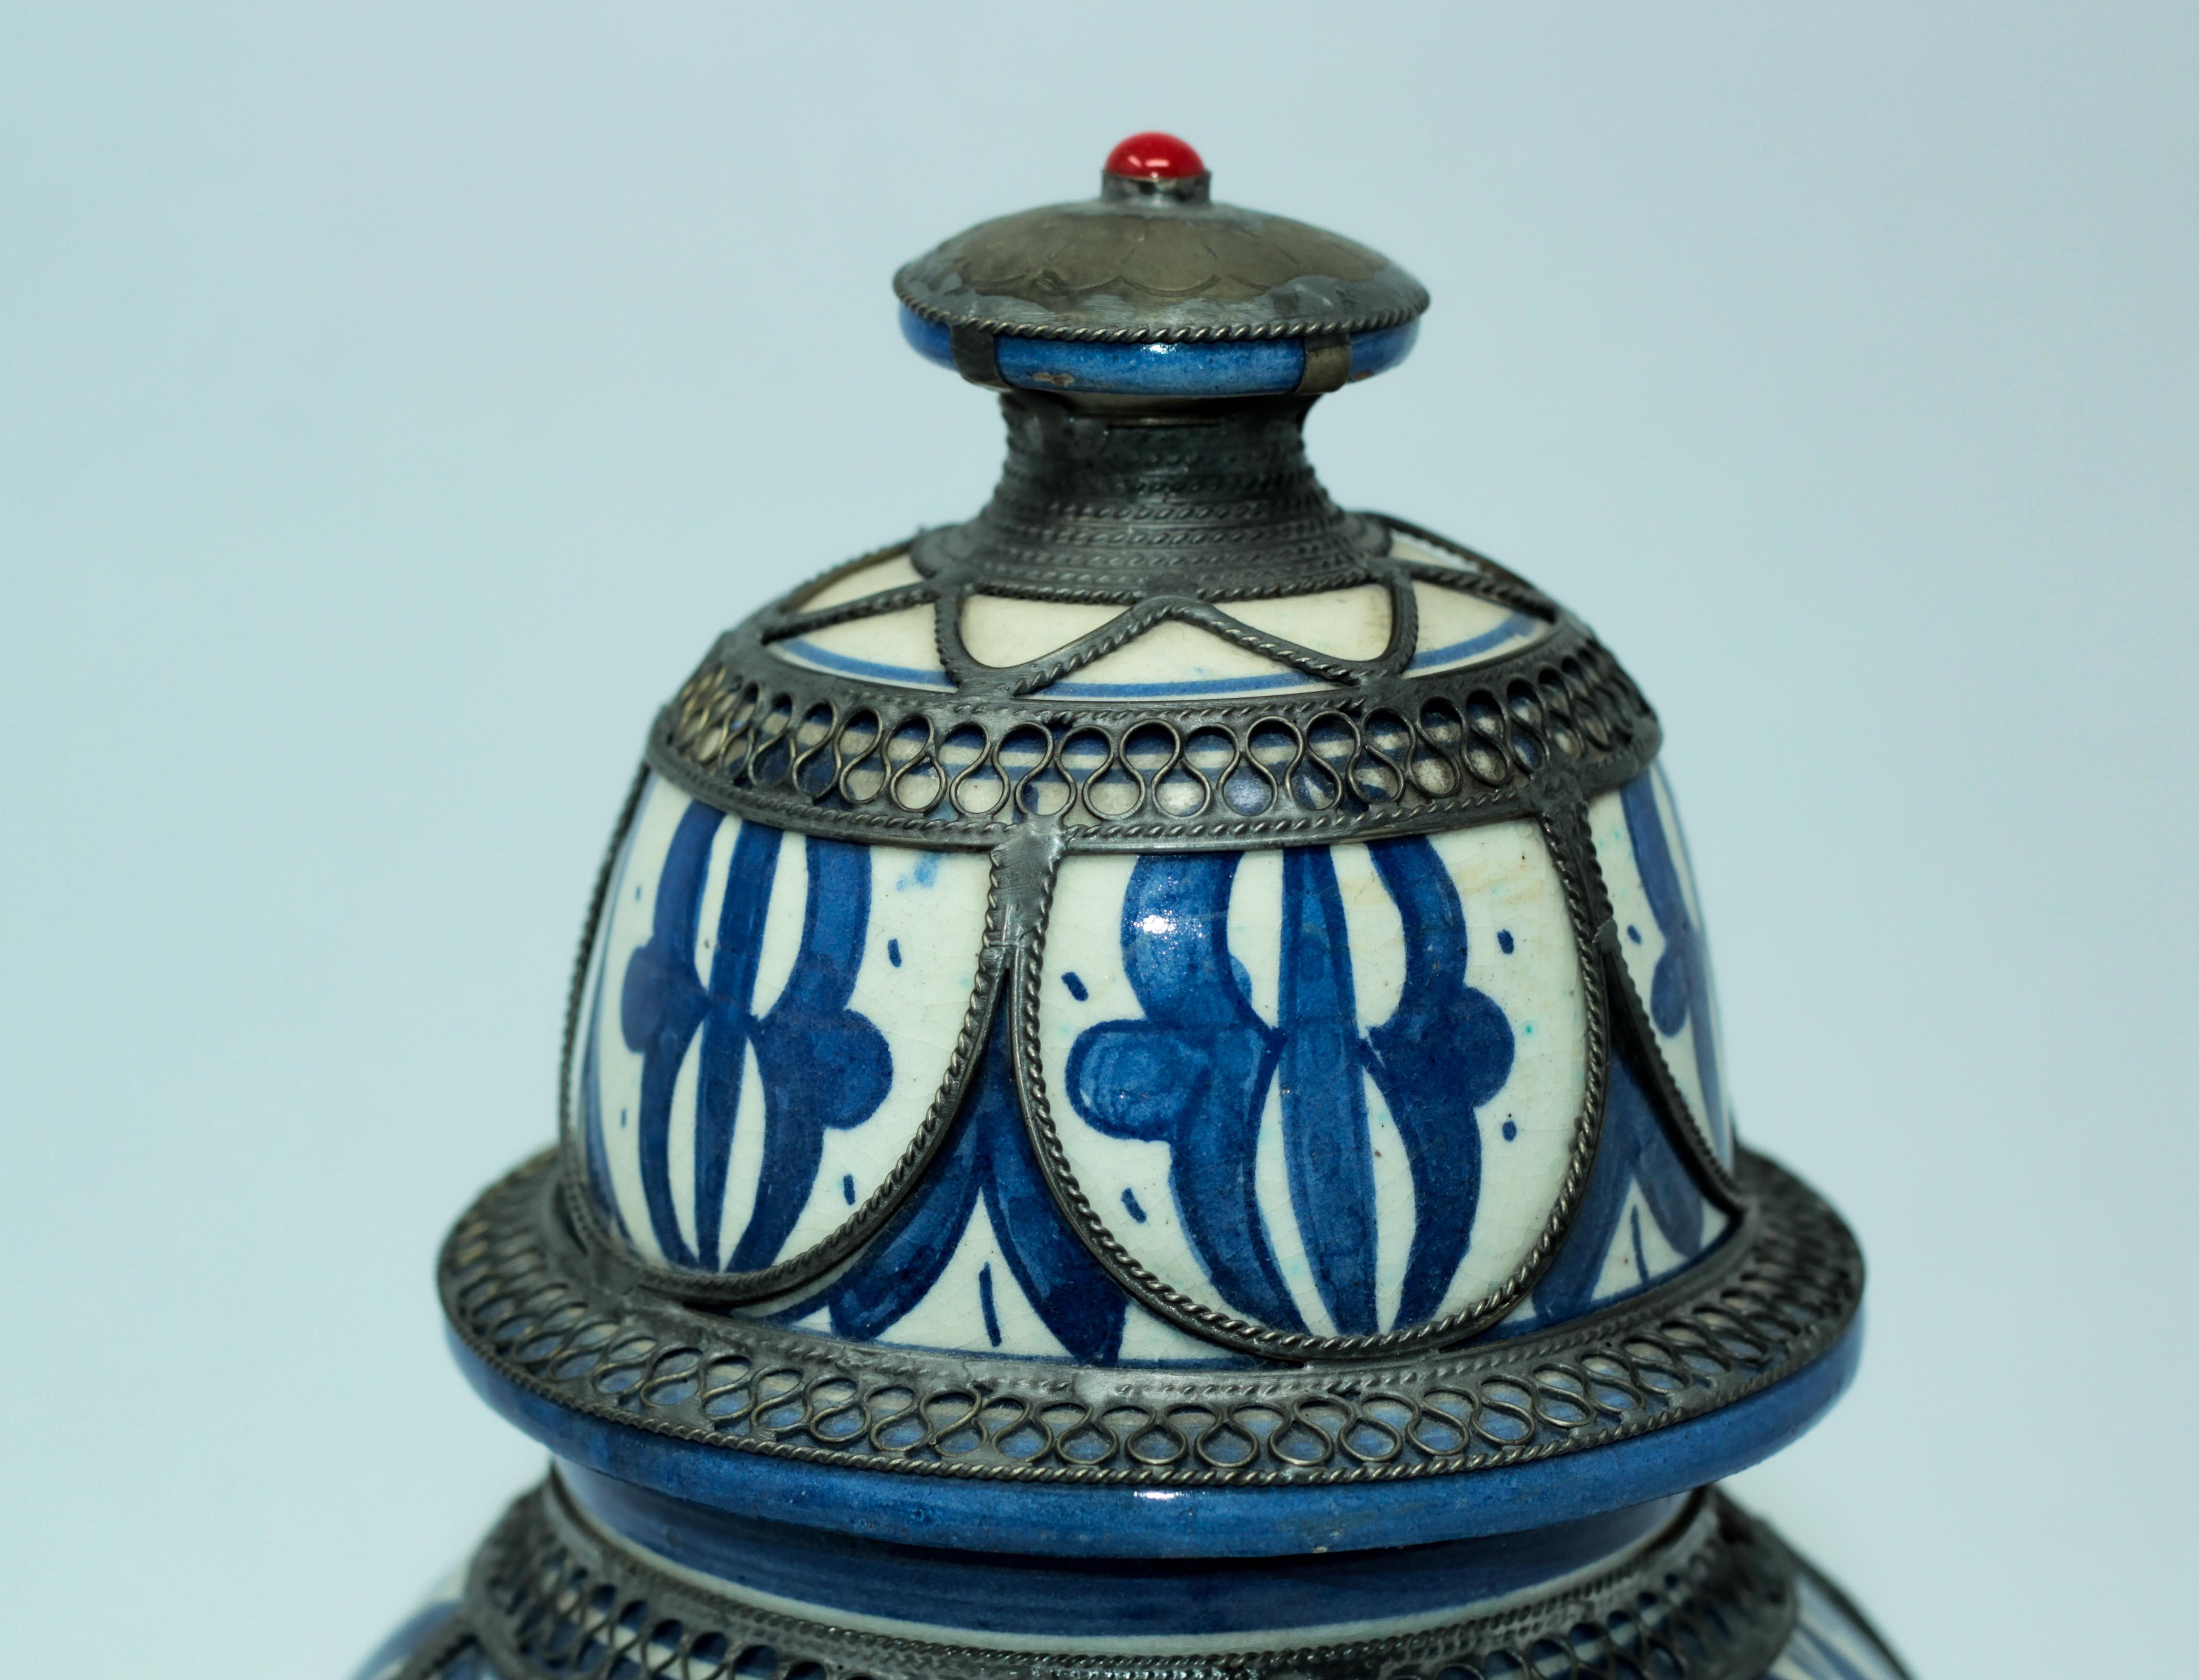 Fabuleux vase antique en céramique marocaine de style mauresque, fabriqué à la main et orné d'un fin travail de nickel argenté filigrané.
La couleur de la céramique est connue sous le nom de bleu de Fez.
Vase en céramique bleu et blanc avec